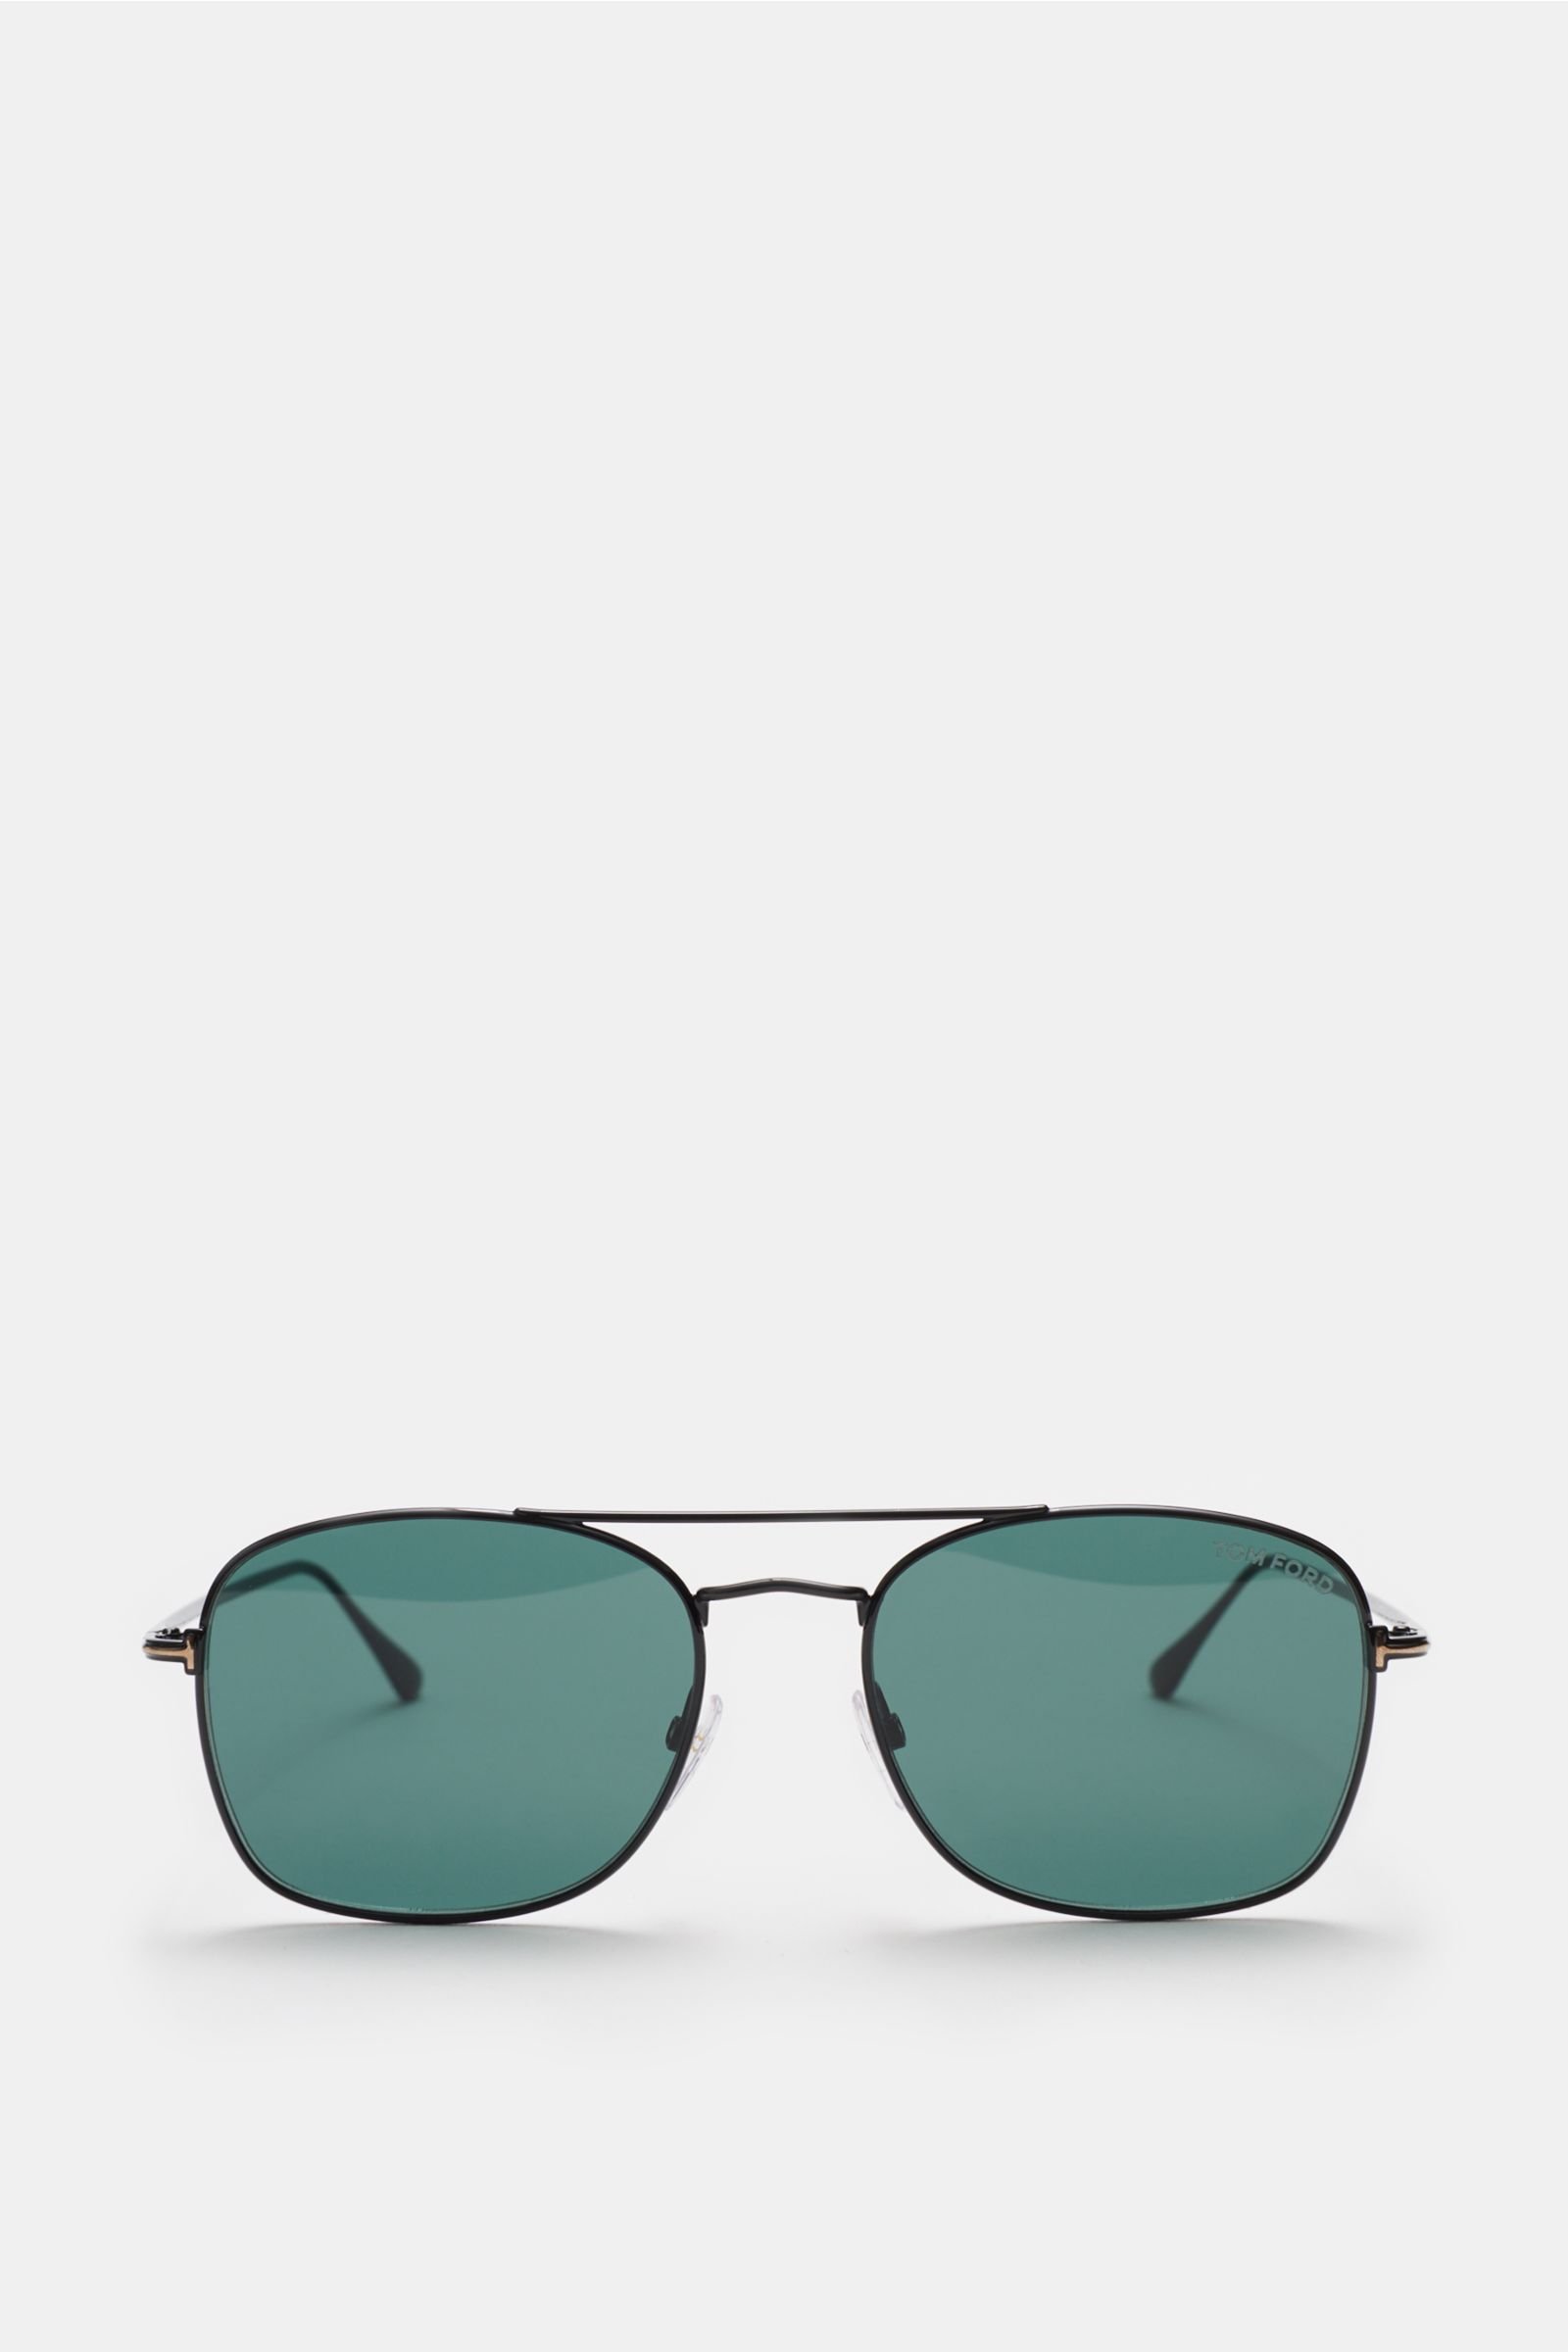 Sonnenbrille 'Luca' schwarz/grün